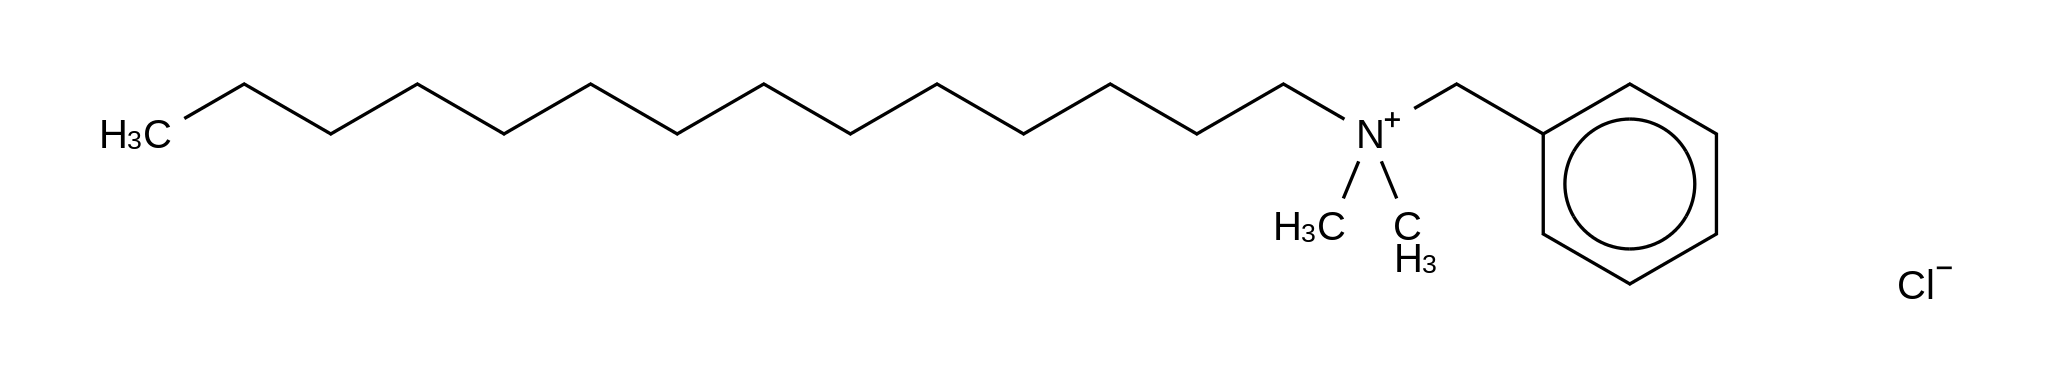 Benzyldimethyltetradecylammonium Chloride